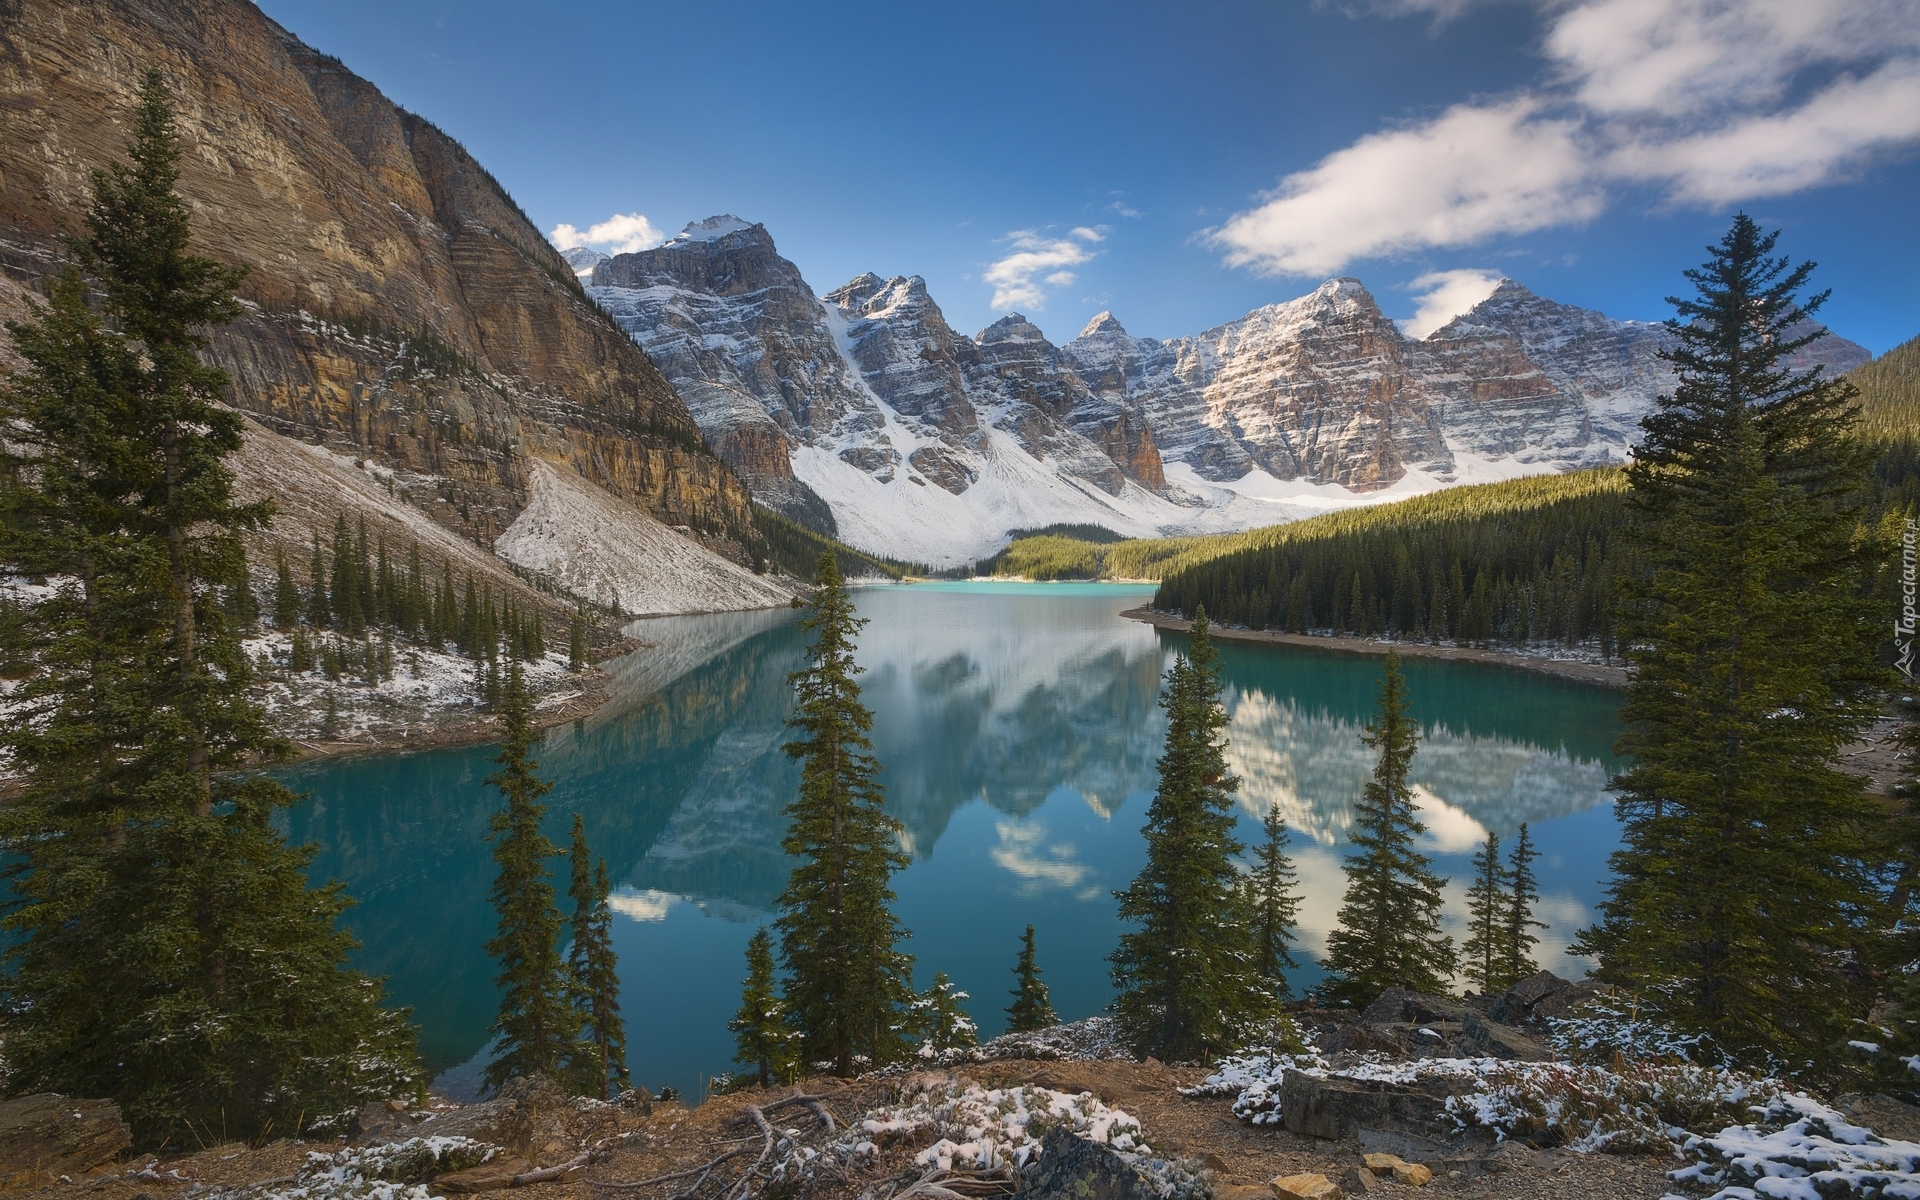 Park Narodowy Banff, Jezioro Moraine, Las, Drzewa, Góry, Chmury, Odbicie, Prowincja Alberta, Kanada